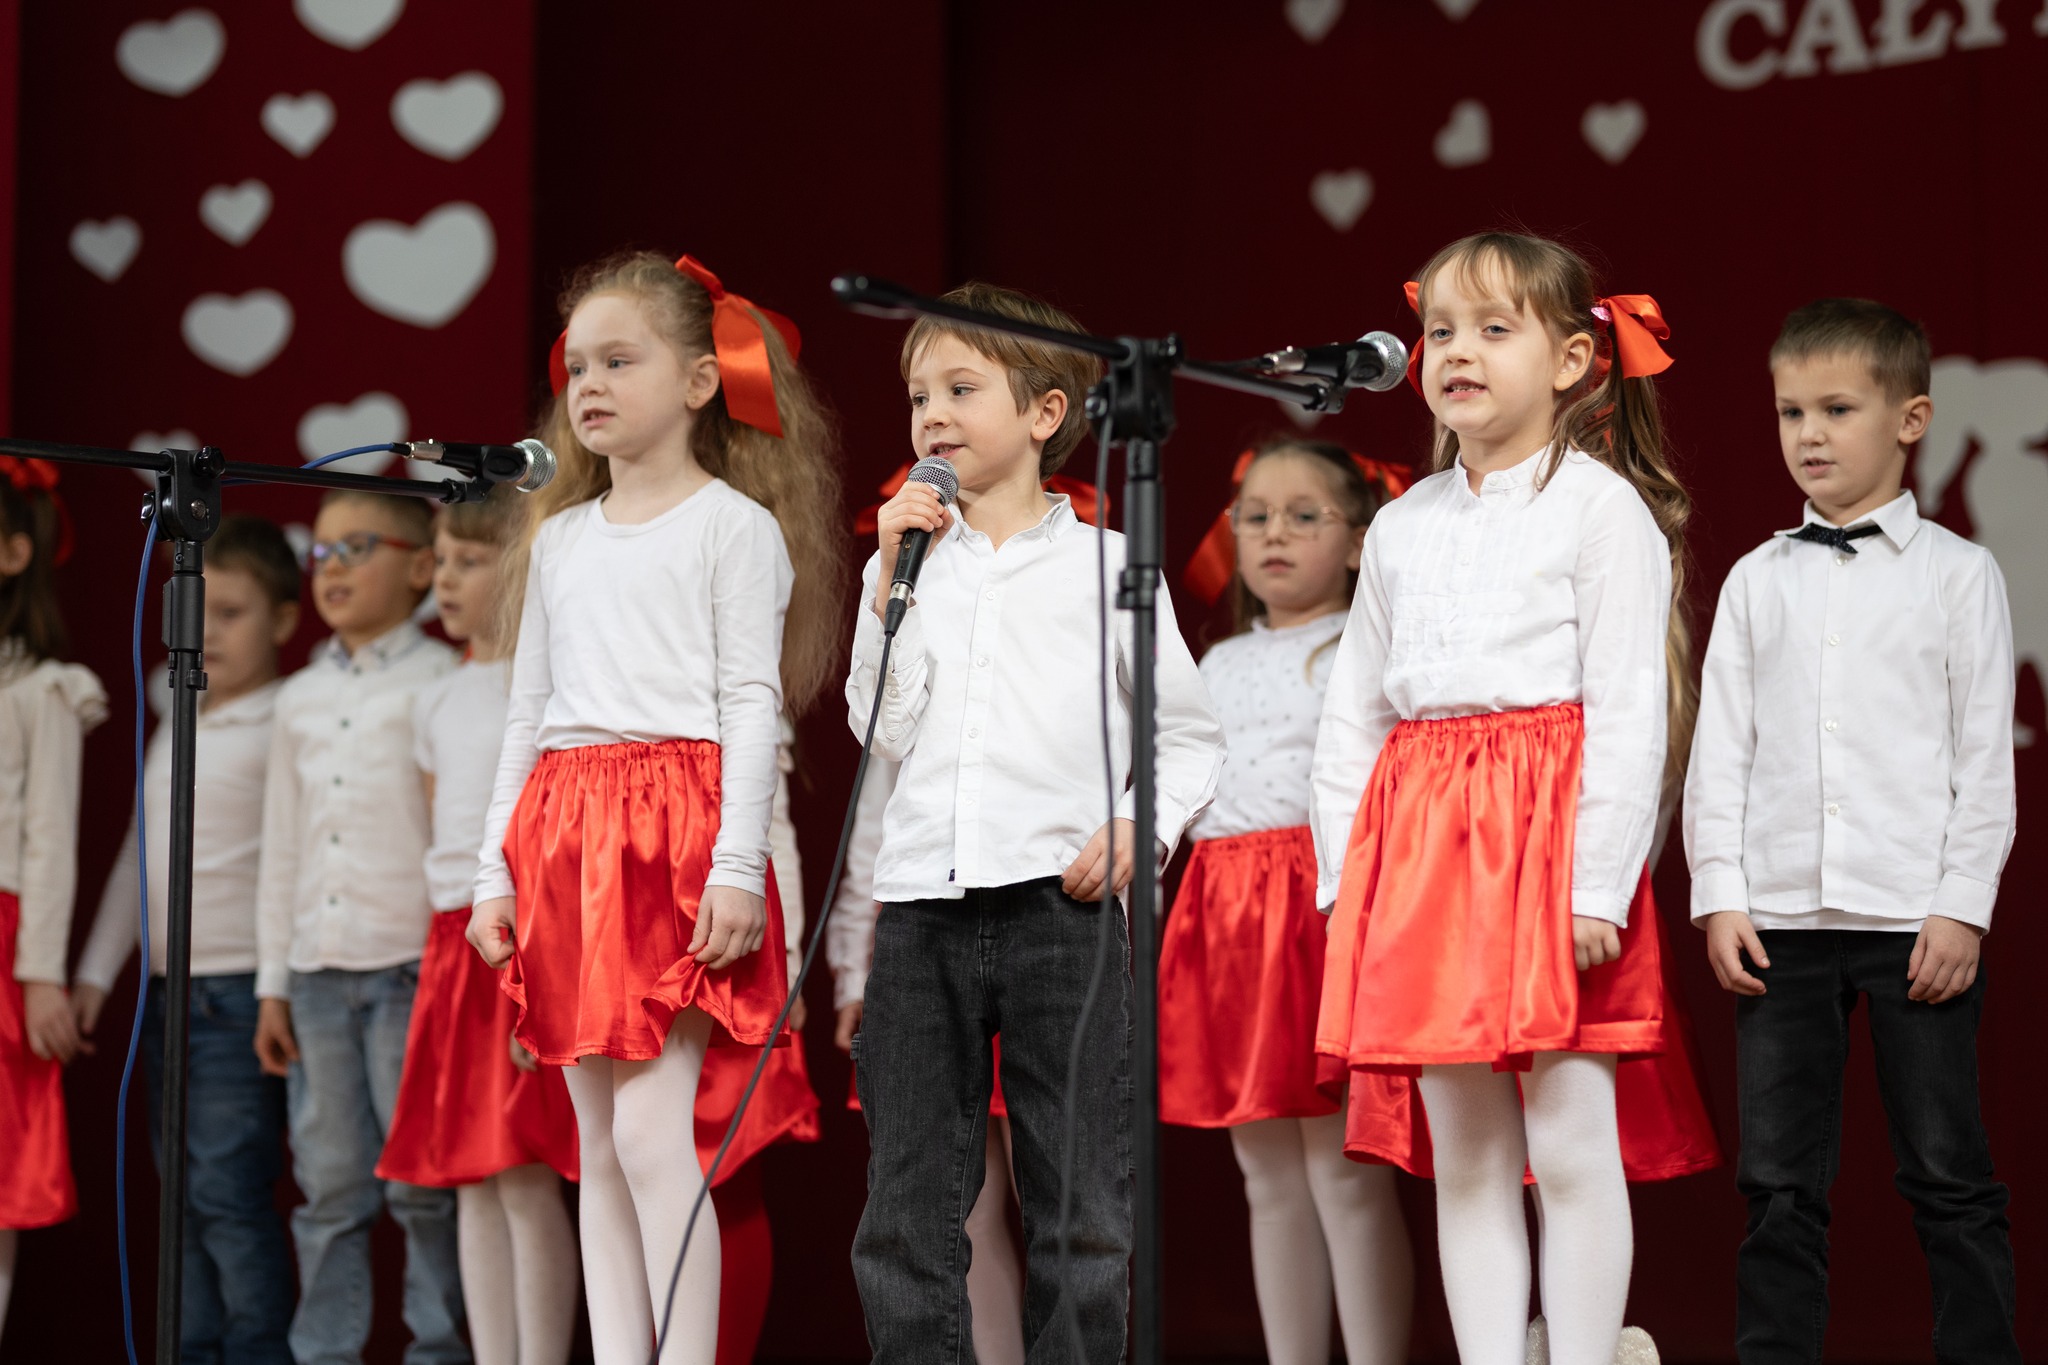 Zdjęcie przedstawia przedszkolaków śpiewających na scenie. Dziewczynki ubrane są w biało-czerwone stroje, a chłopcy w biało-czarne. Na głównym planie znajduje się chłopiec, który stoi pomiędzy dwiema dziewczynkami.